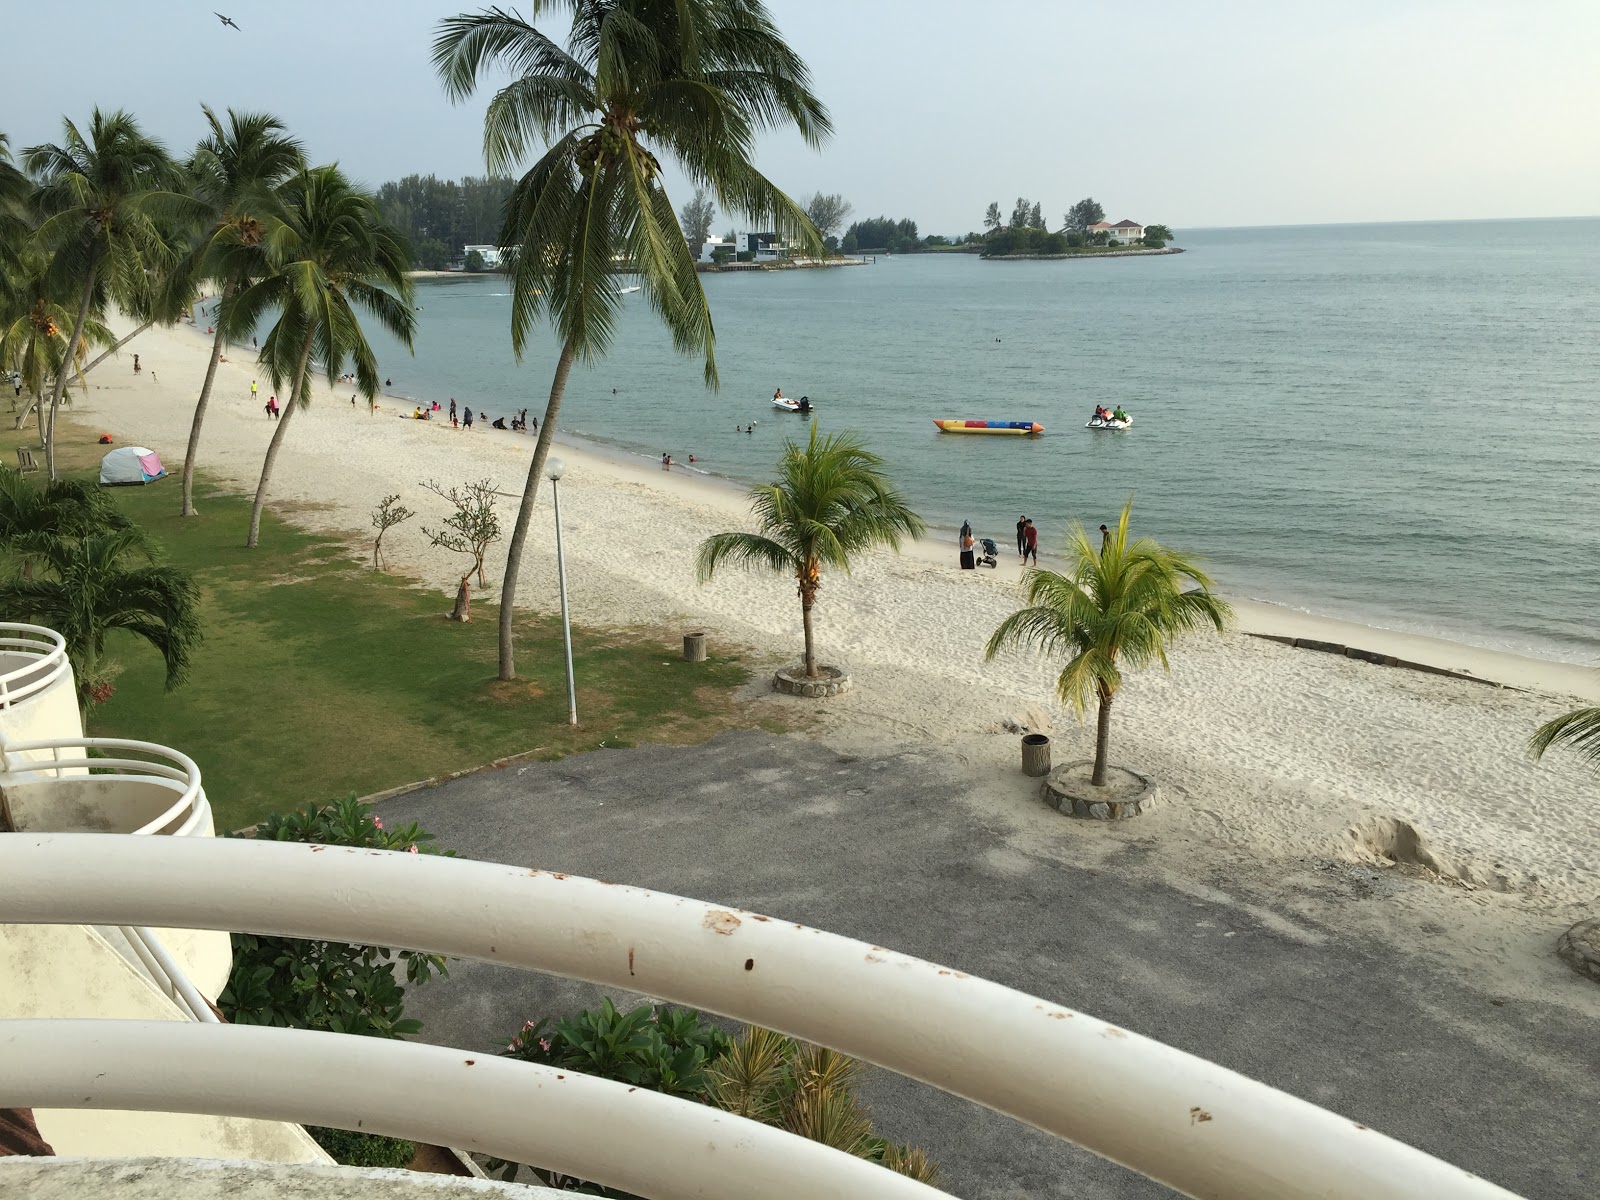 Foto de Port Dickson Public Beach - lugar popular entre los conocedores del relax